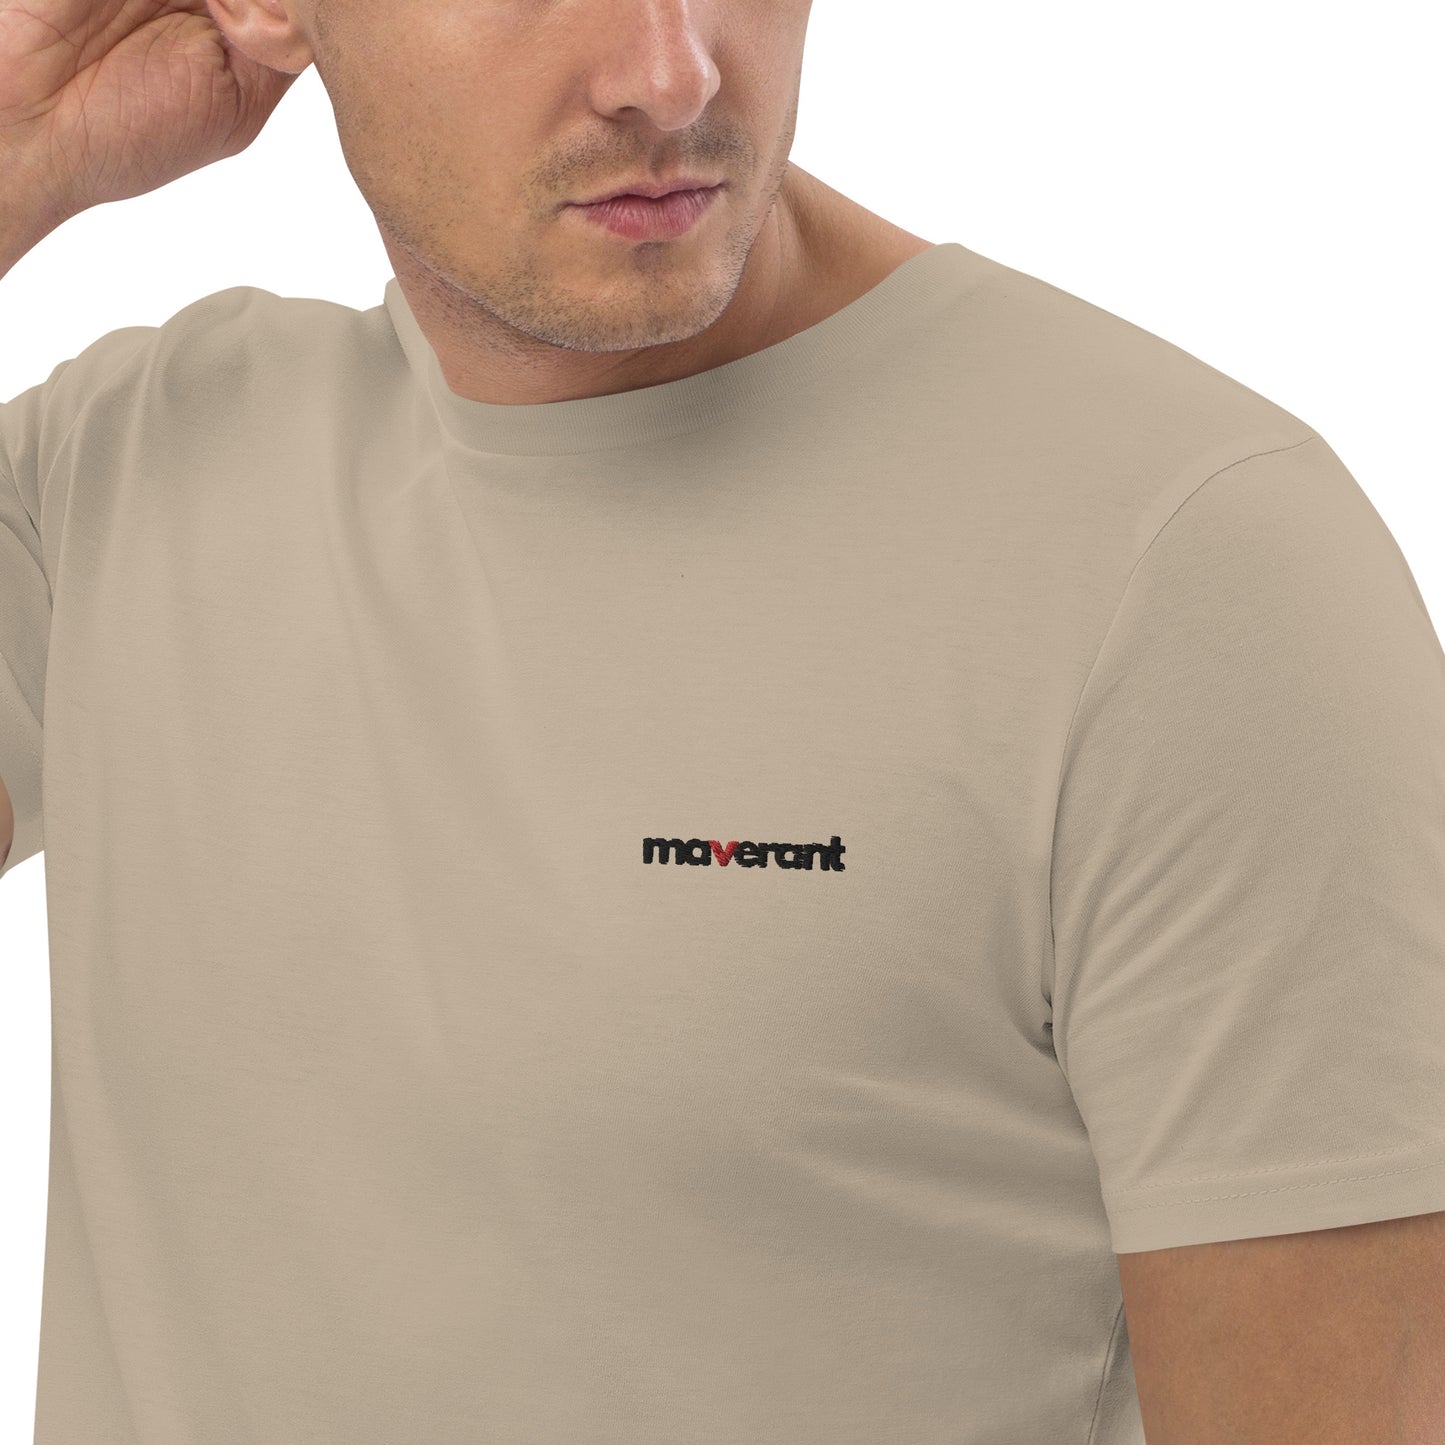 T-shirt in cotone organico unisex colore Desert Dust con logo ricamato